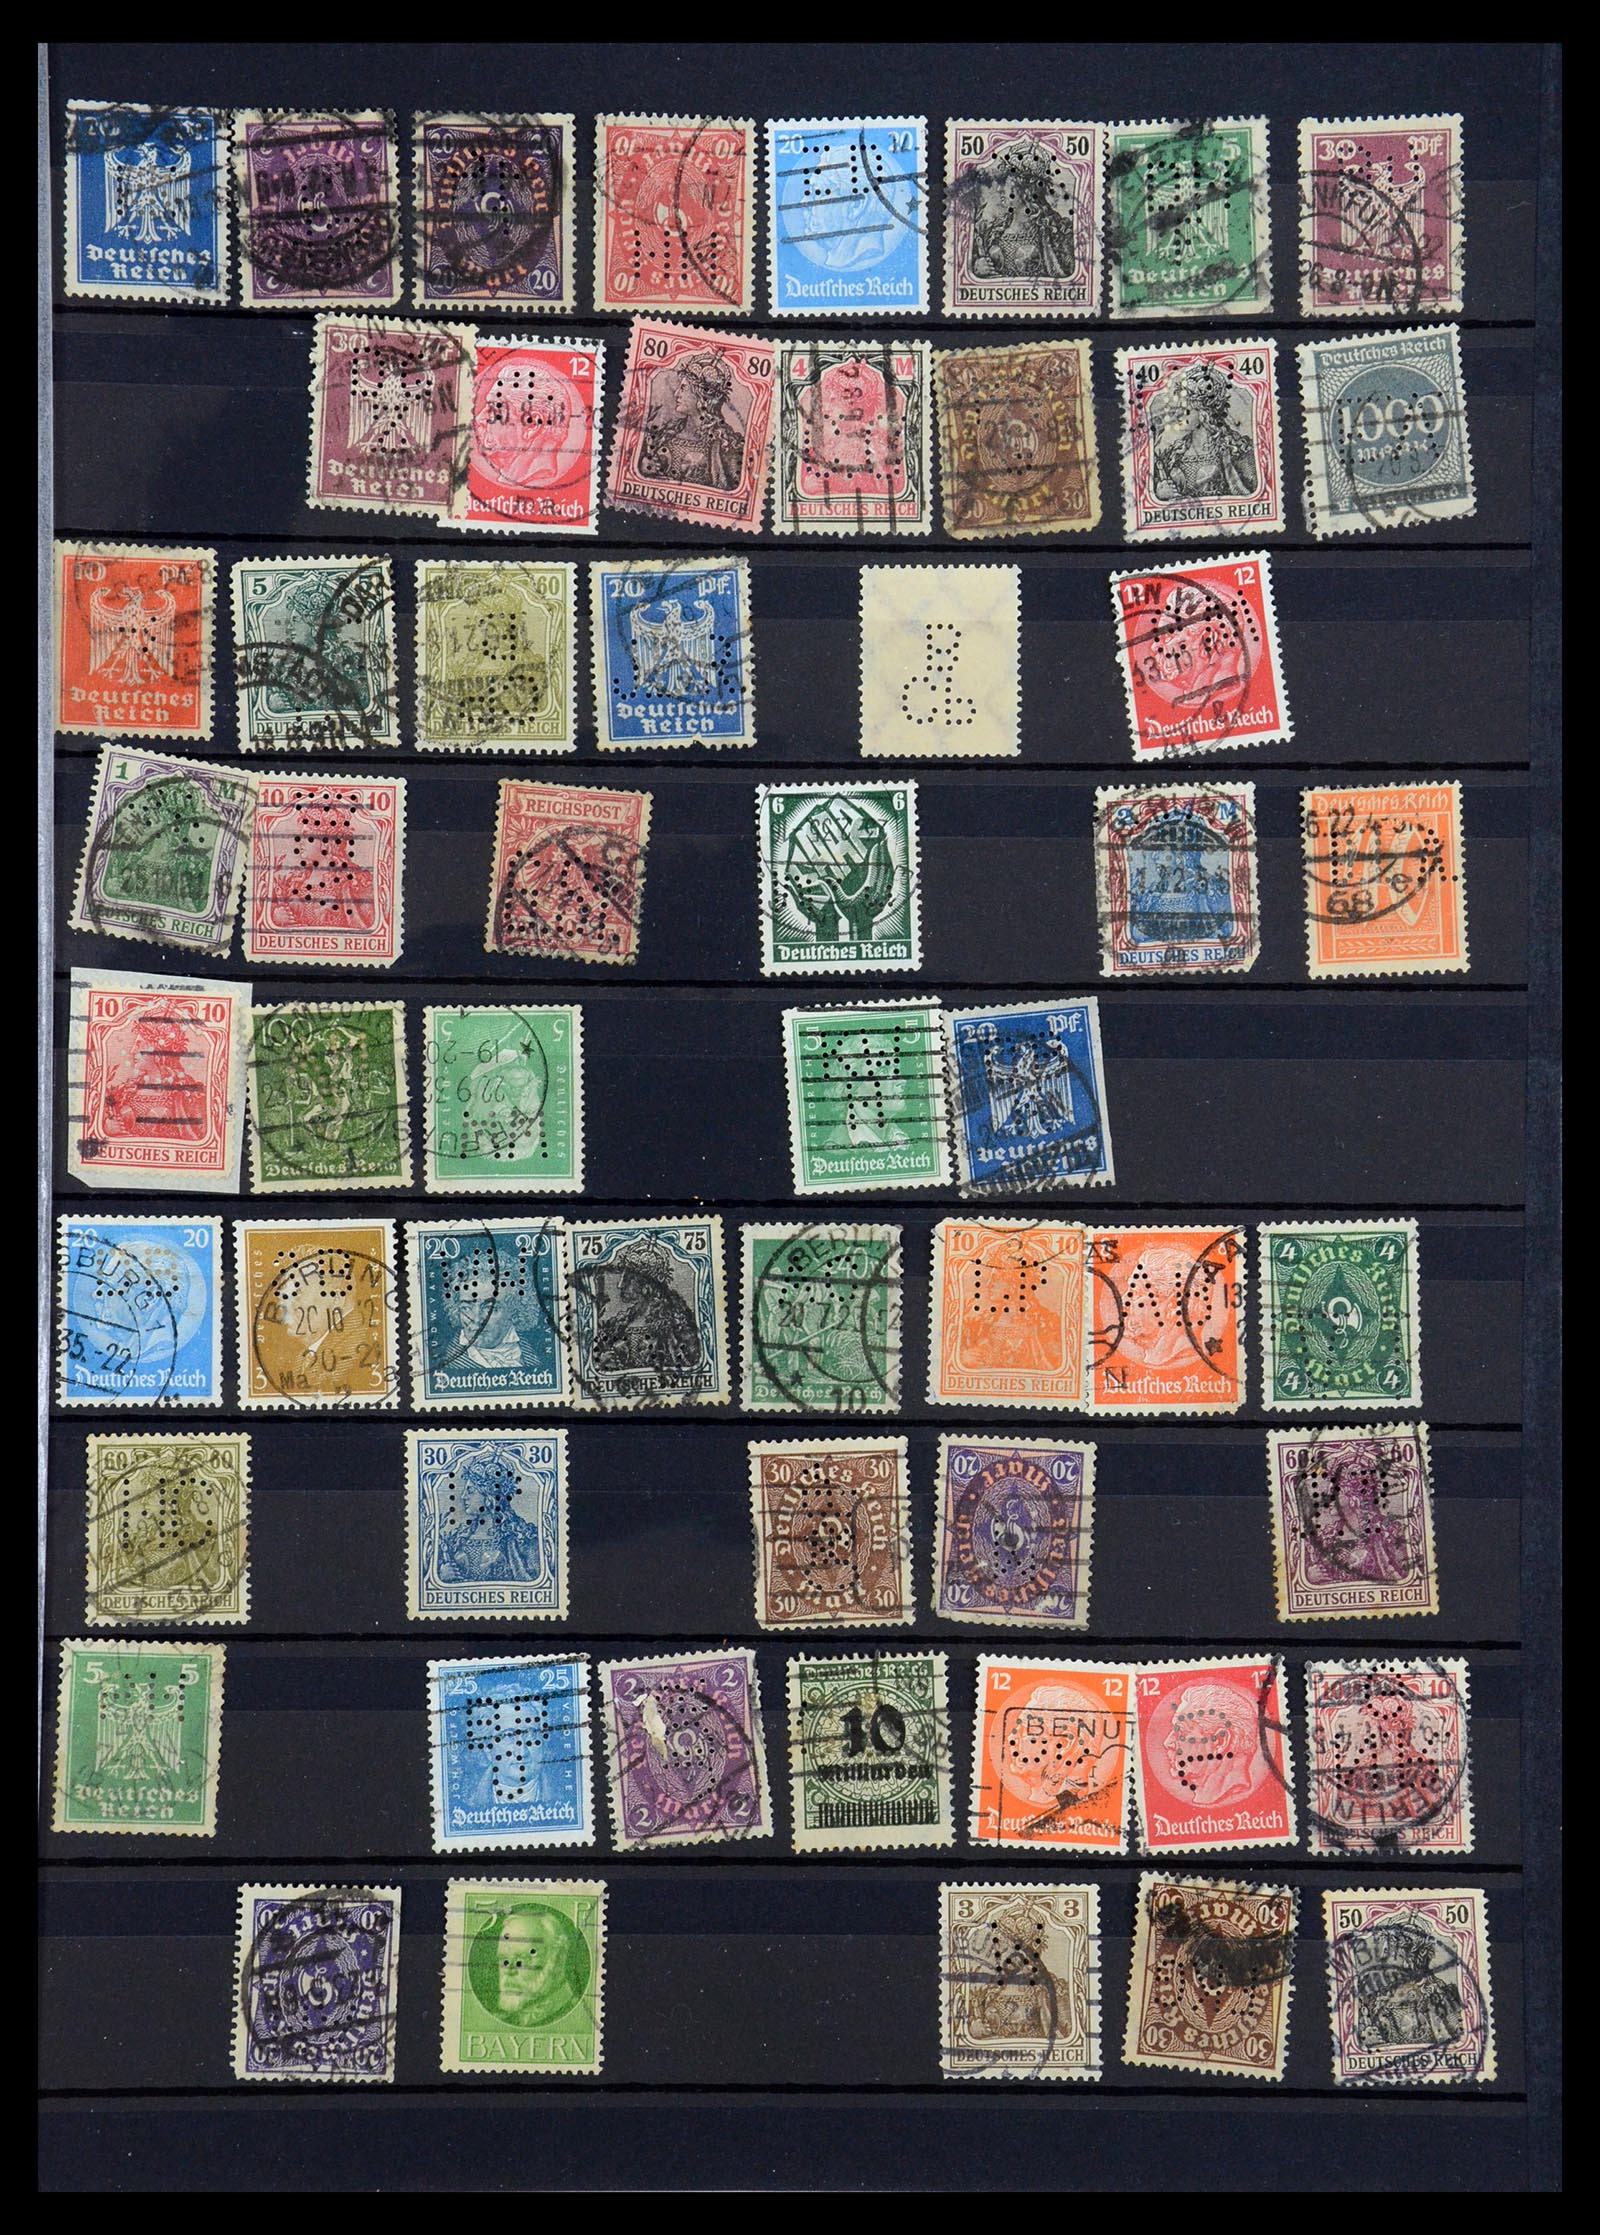 35183 013 - Stamp Collection 35183 German Reich perfins 1880-1945.